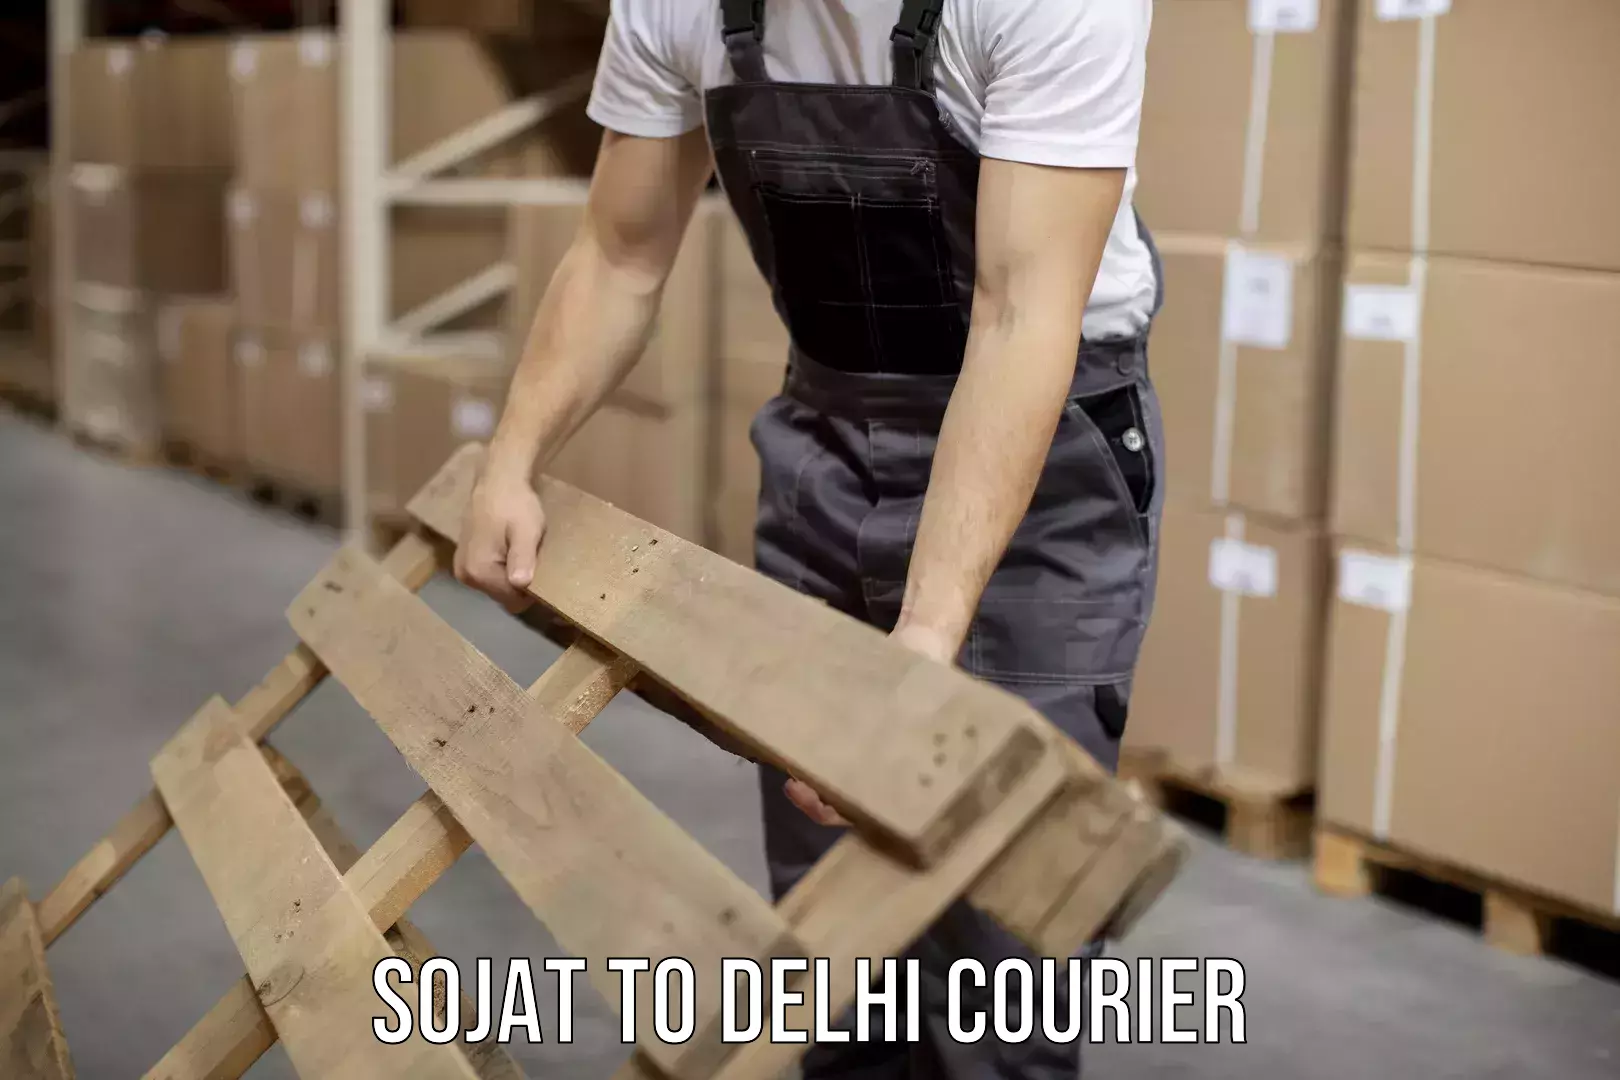 Courier service efficiency Sojat to IIT Delhi